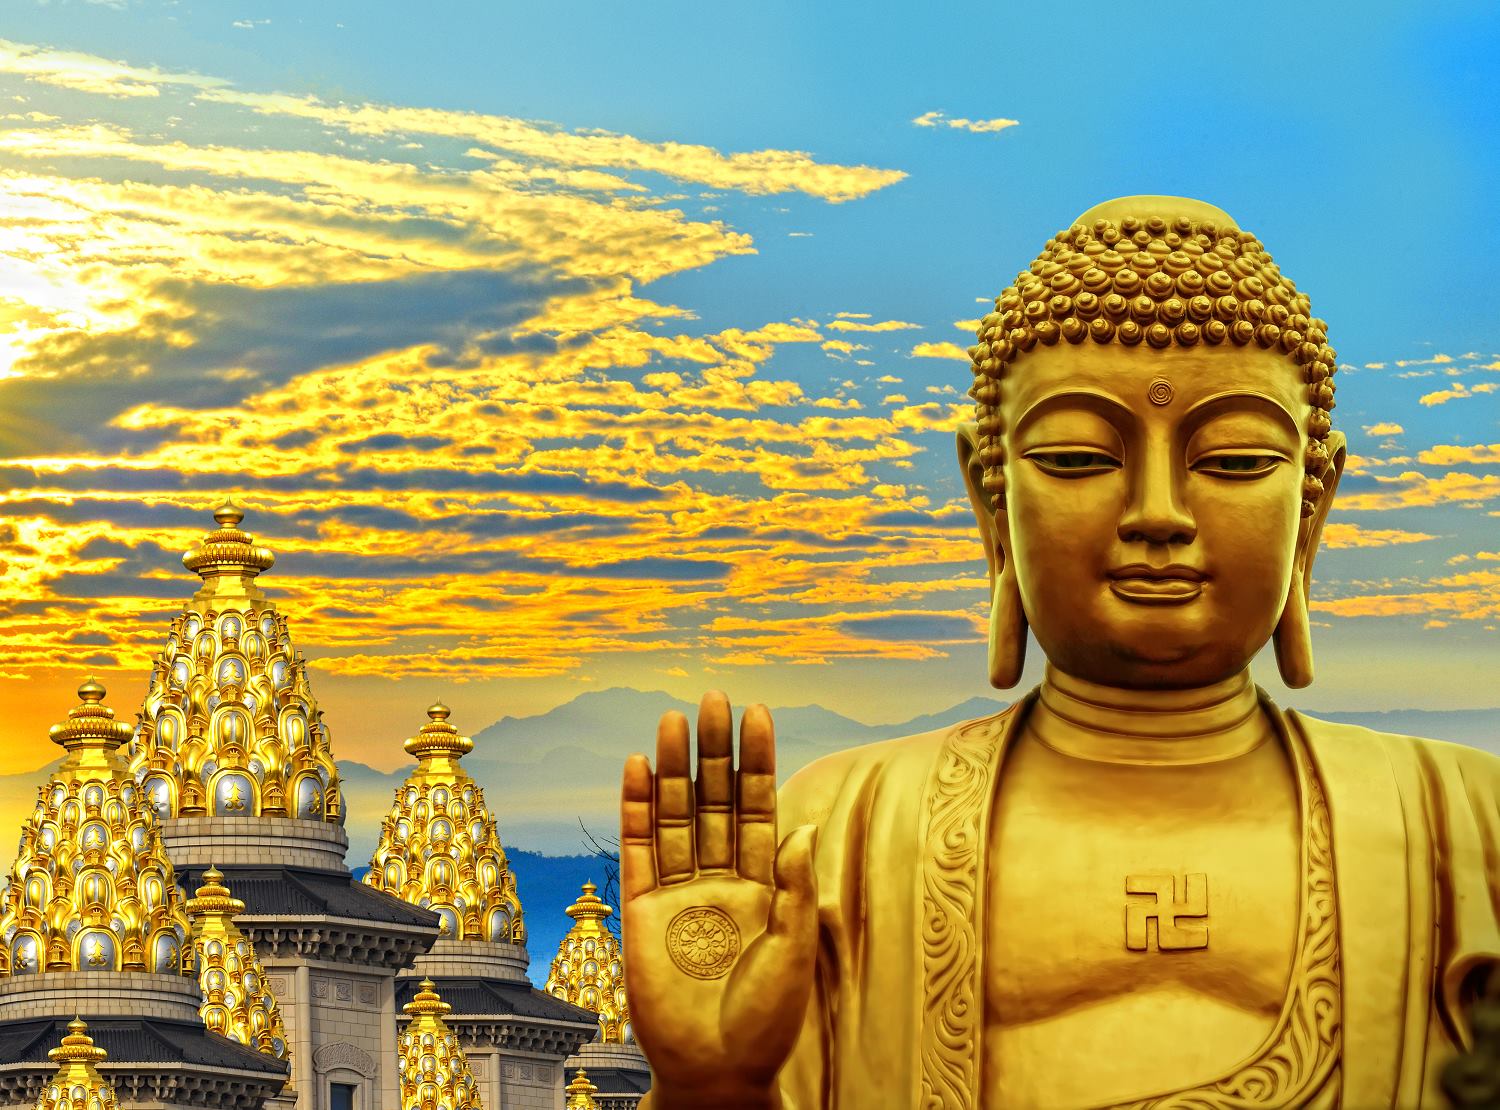 Triết lý Phật giáo: Hãy xem hình ảnh và nghe về những triết lý Phật giáo, giúp ta hiểu thêm về tư tưởng Phật giáo và áp dụng vào cuộc sống hàng ngày, giúp ta sống hạnh phúc và an lạc.